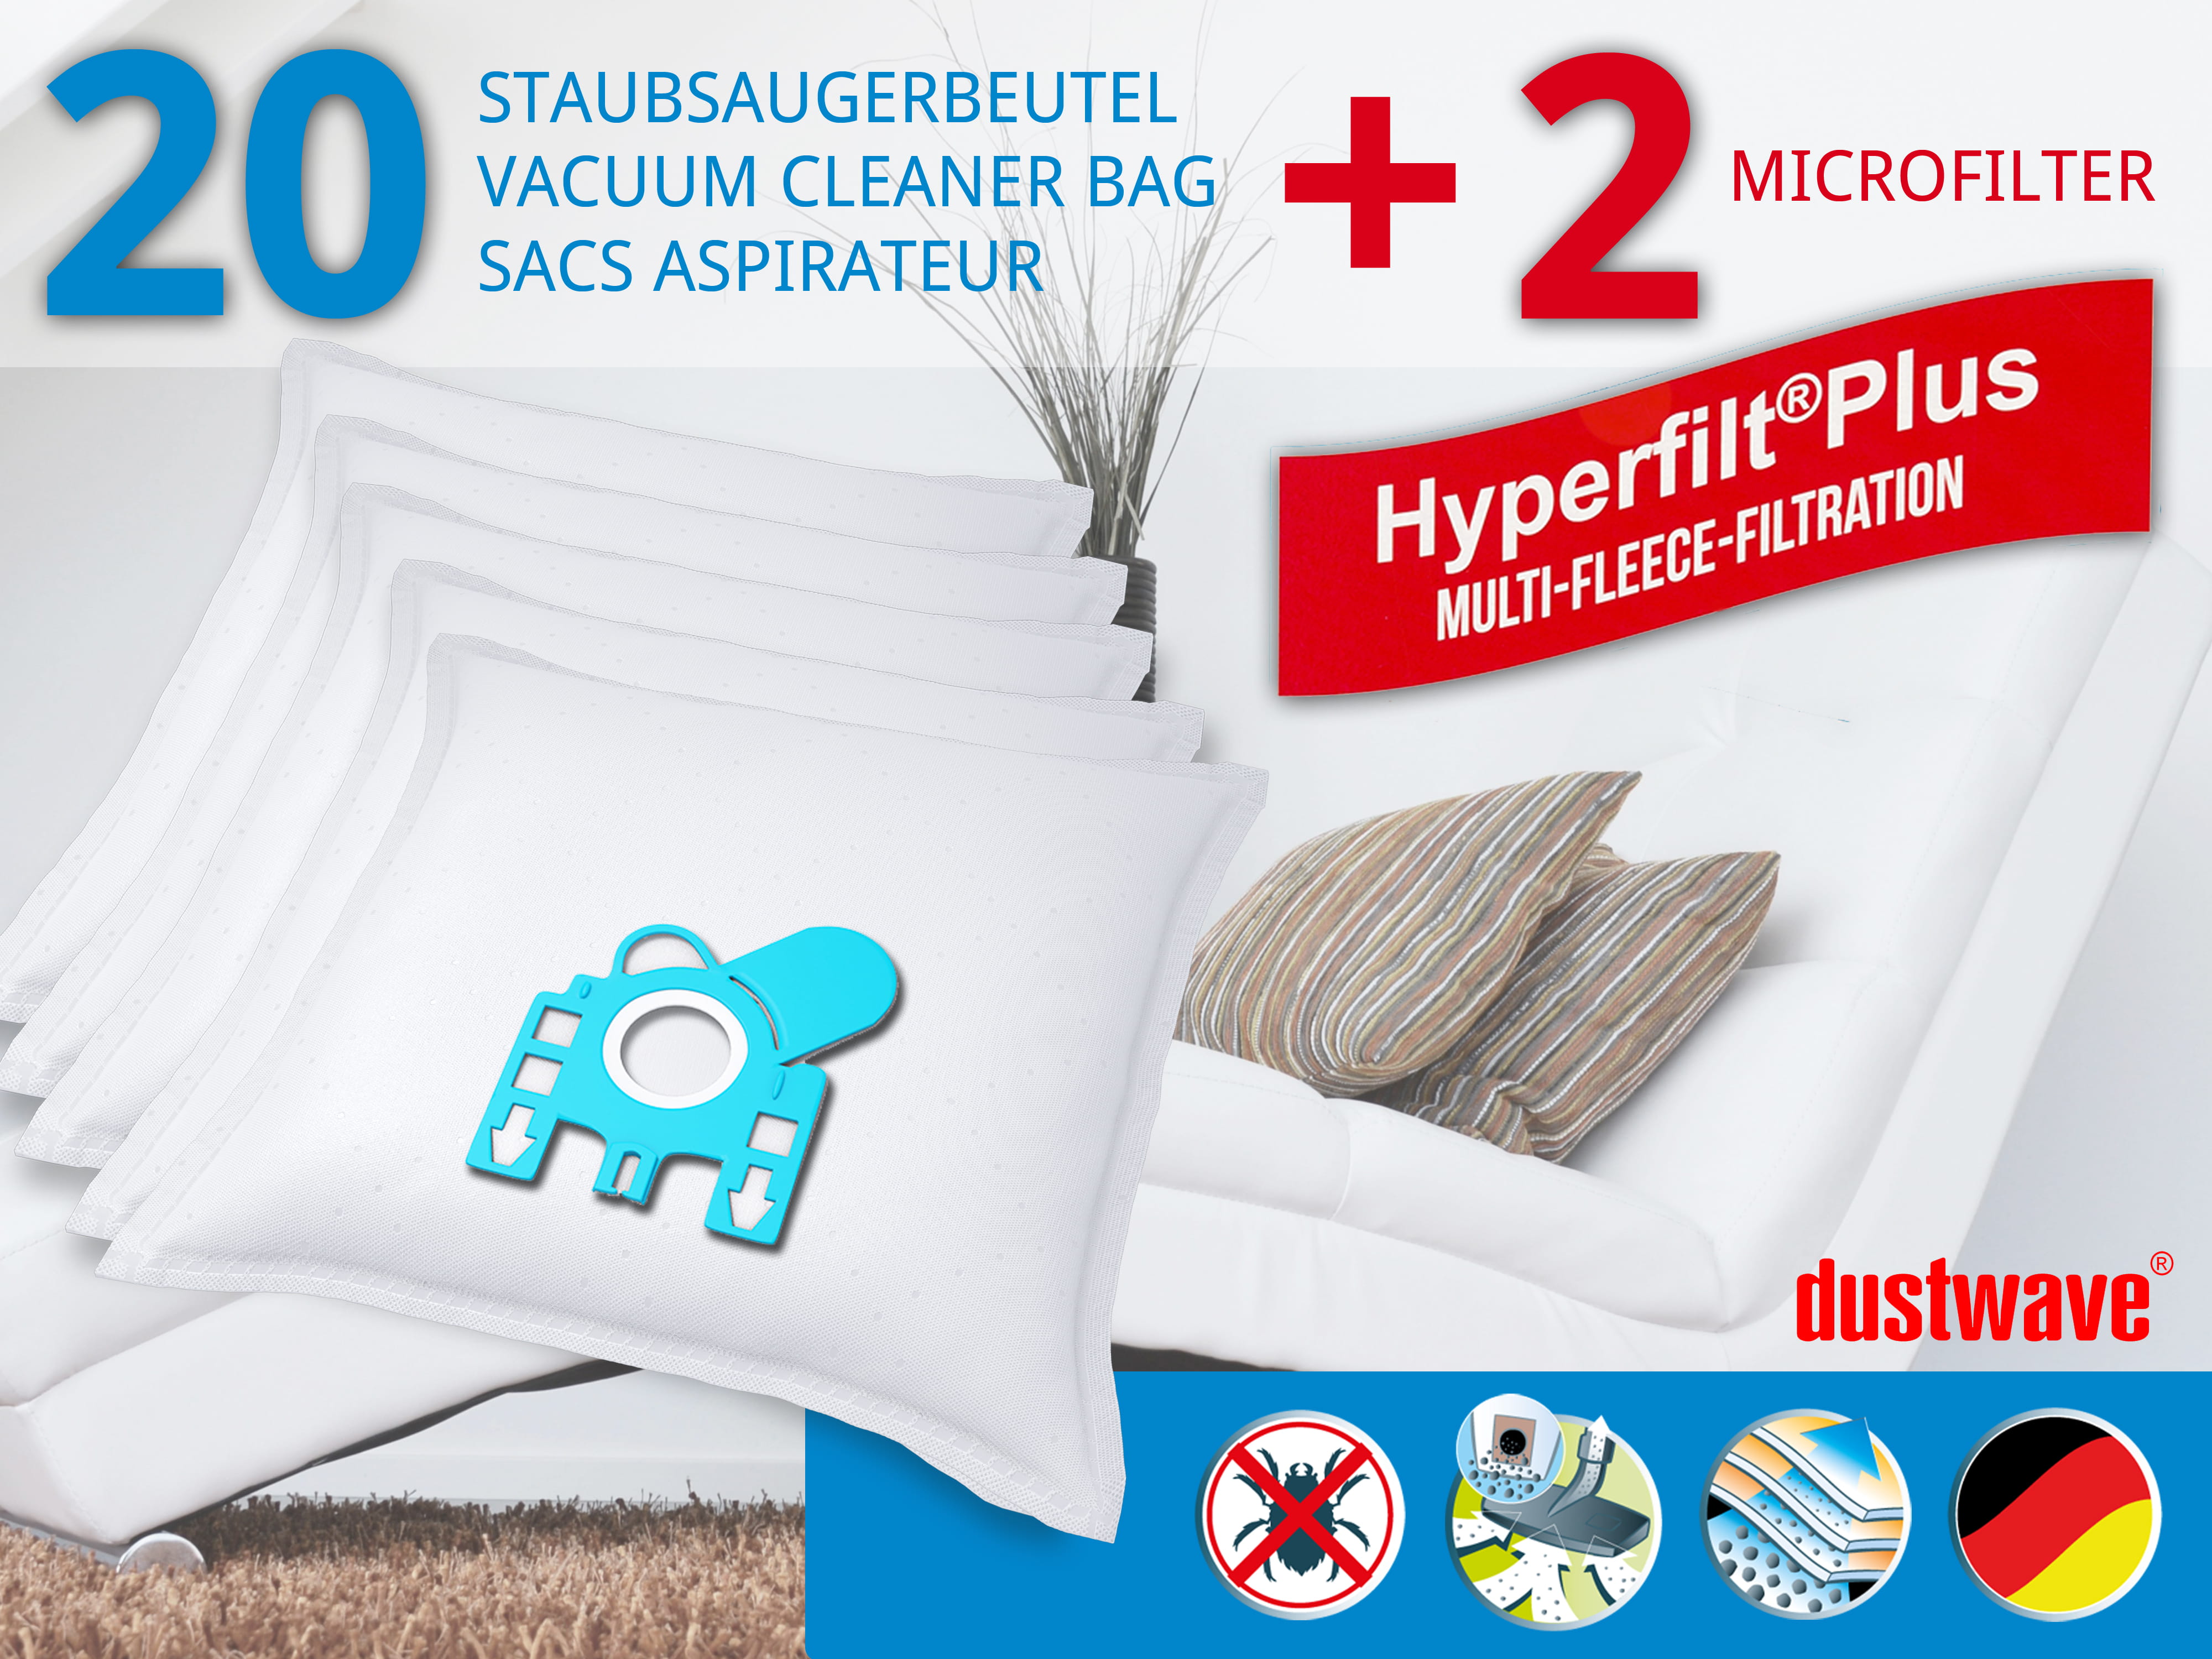 Dustwave® 20 Staubsaugerbeutel für Hoover TFB2283 013 FreeMotion - hocheffizient, mehrlagiges Mikrovlies mit Hygieneverschluss - Made in Germany